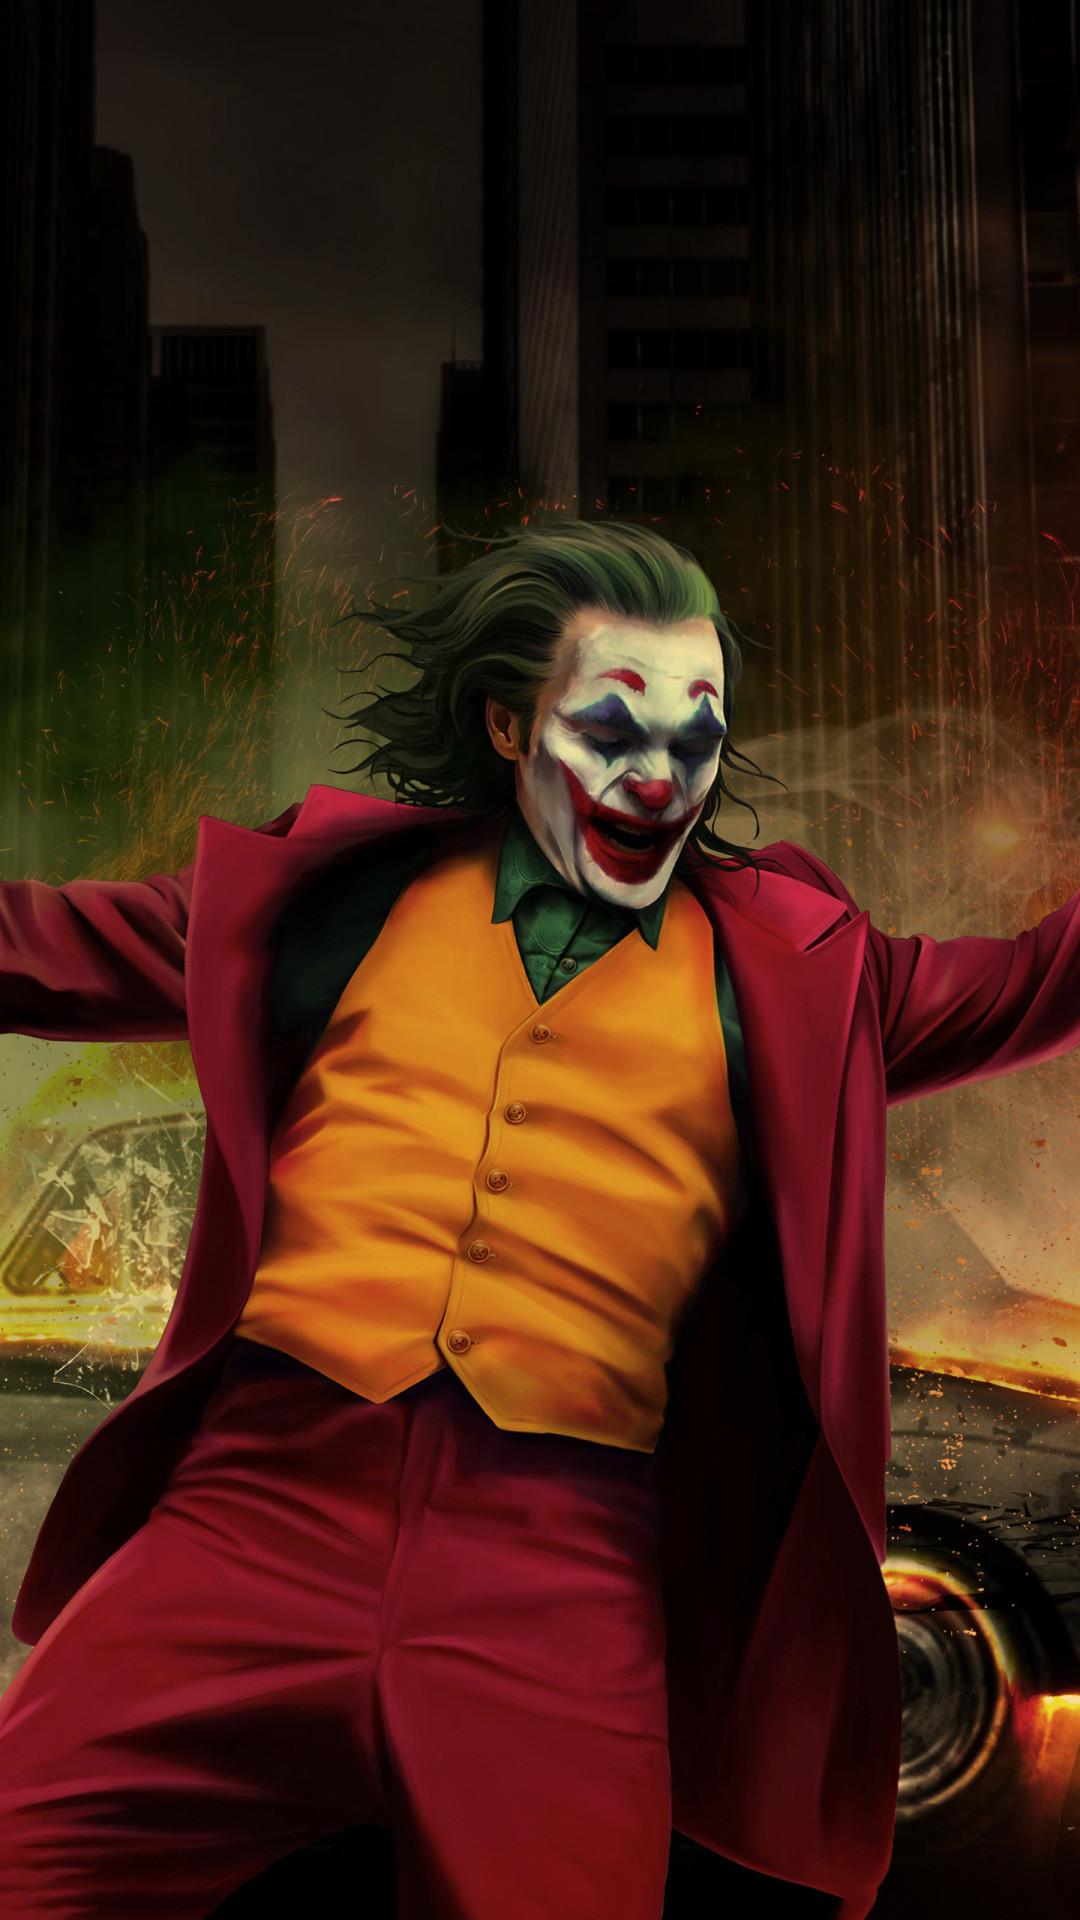 Joker Dance Wallpapers Top Free Joker Dance Backgrounds Wallpaperaccess ...